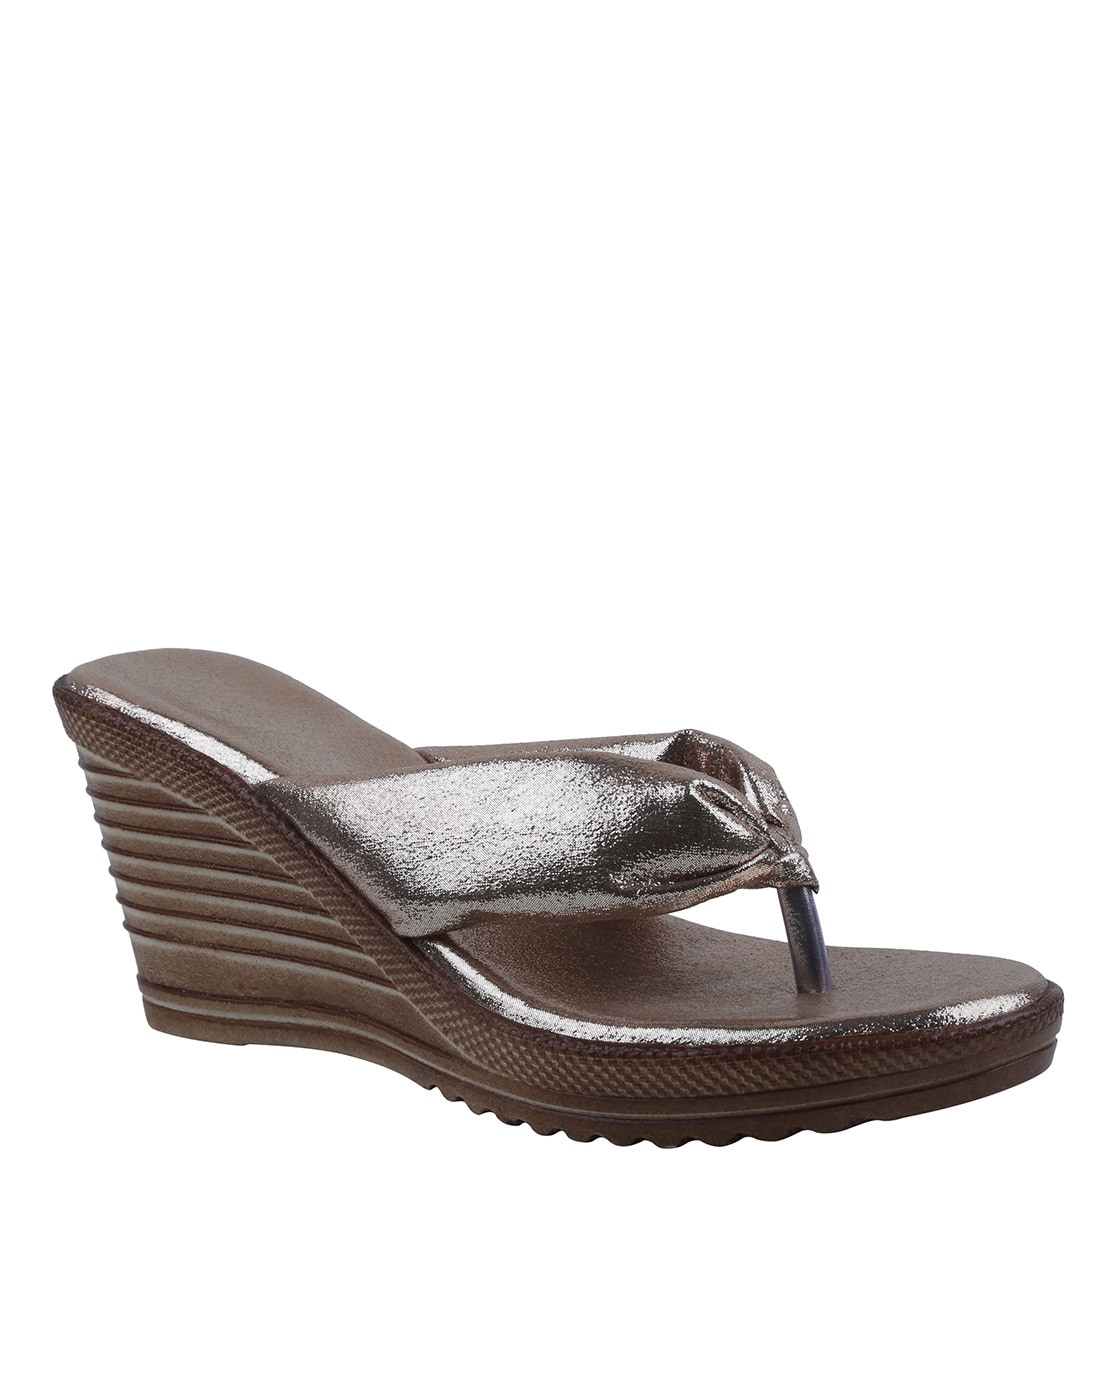 dark grey heeled sandals